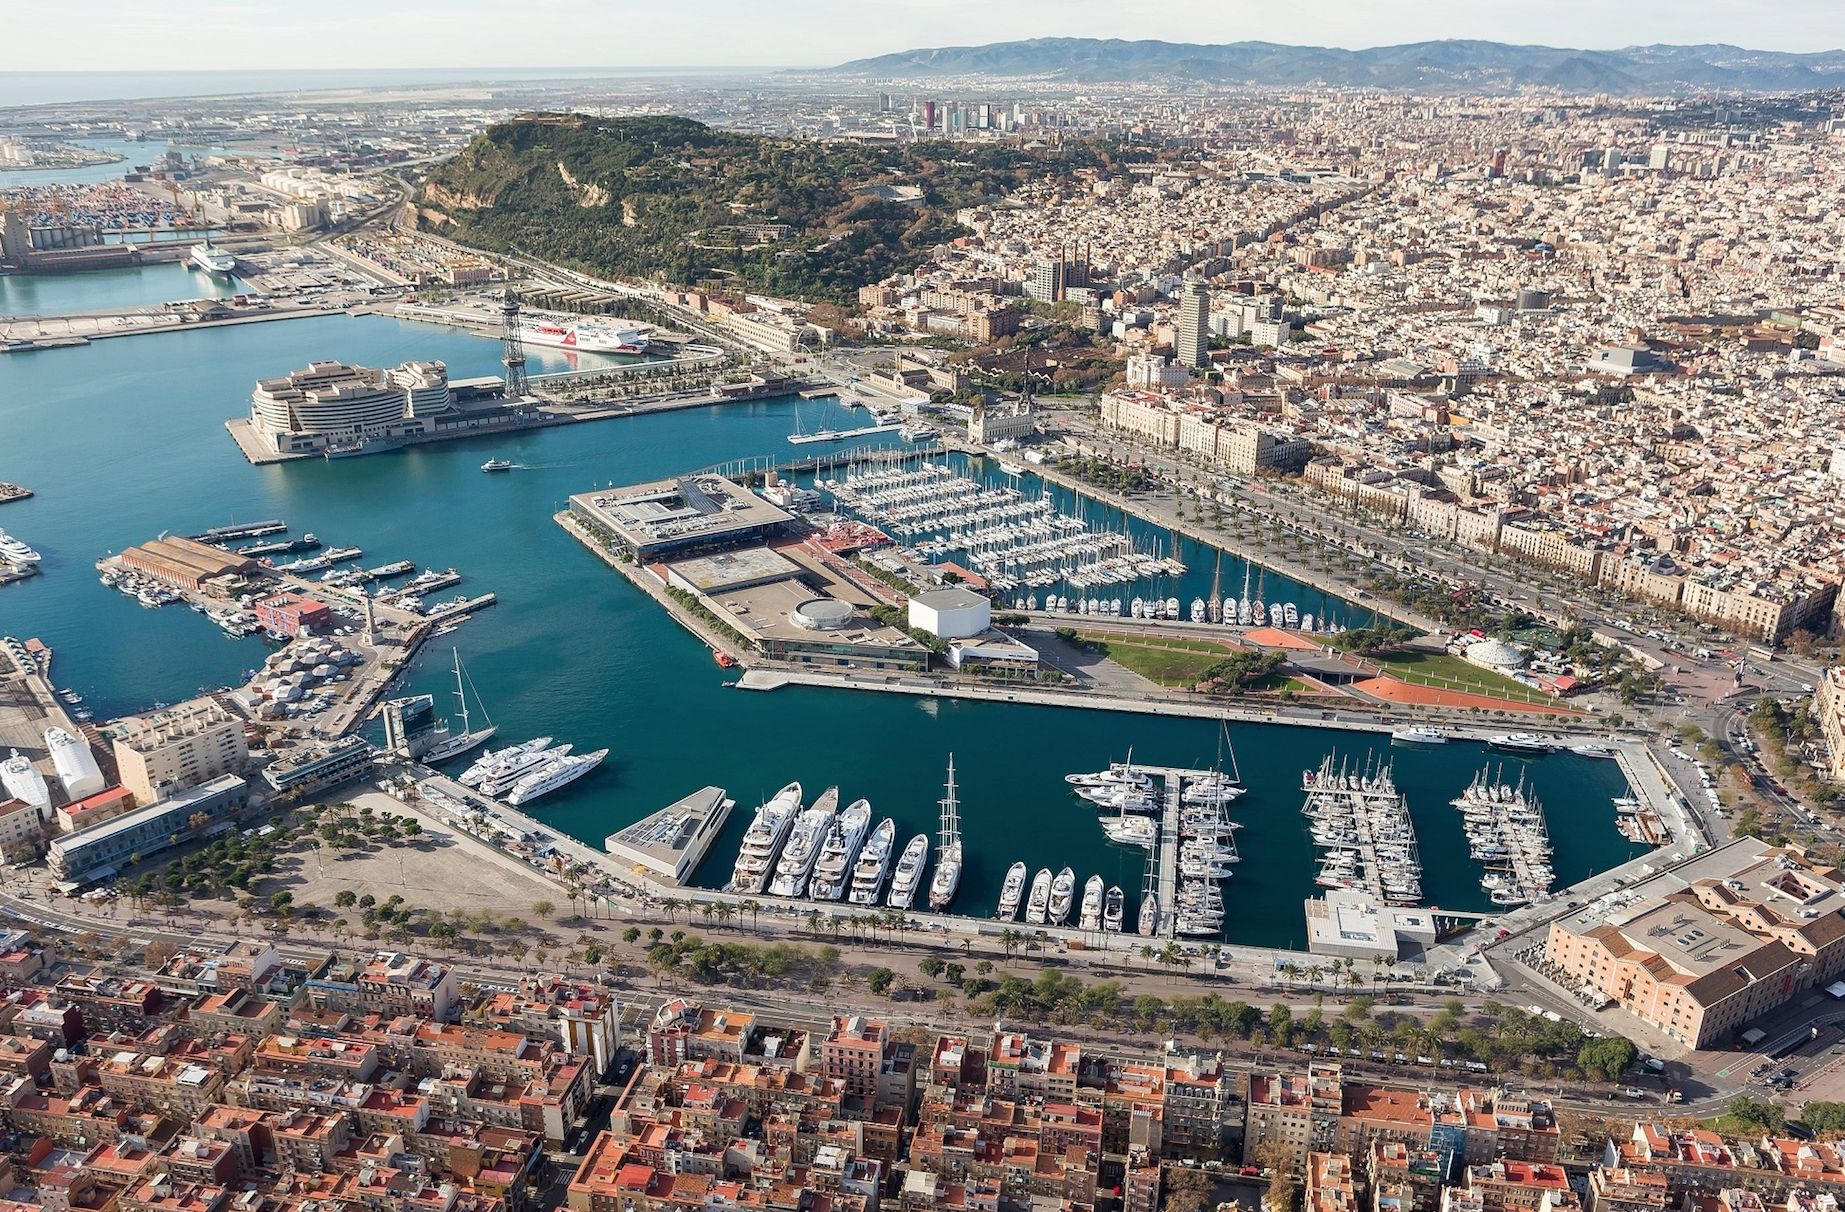 Порт Барселоны Puerto de Barcelona - один из крупнейших портов Средиземноморья Порт Велл Port Vell - центральная часть порта Самая яркая и туристическая часть морского порта Барселоны, именно здесь сосредоточены основные достопримечательности и